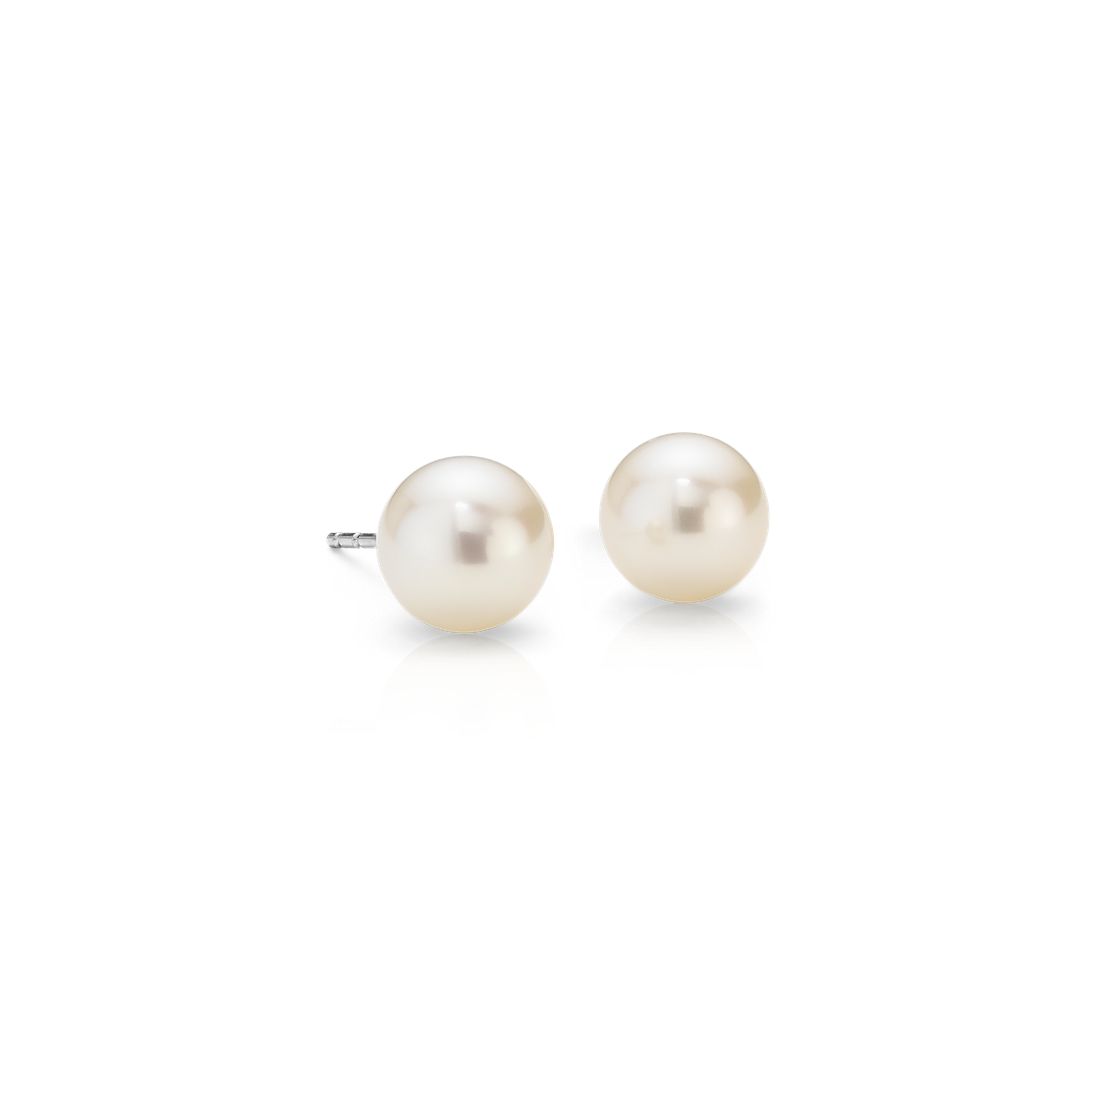 Bodai Cultured Freshwater Pearl Stud Earrings for Women